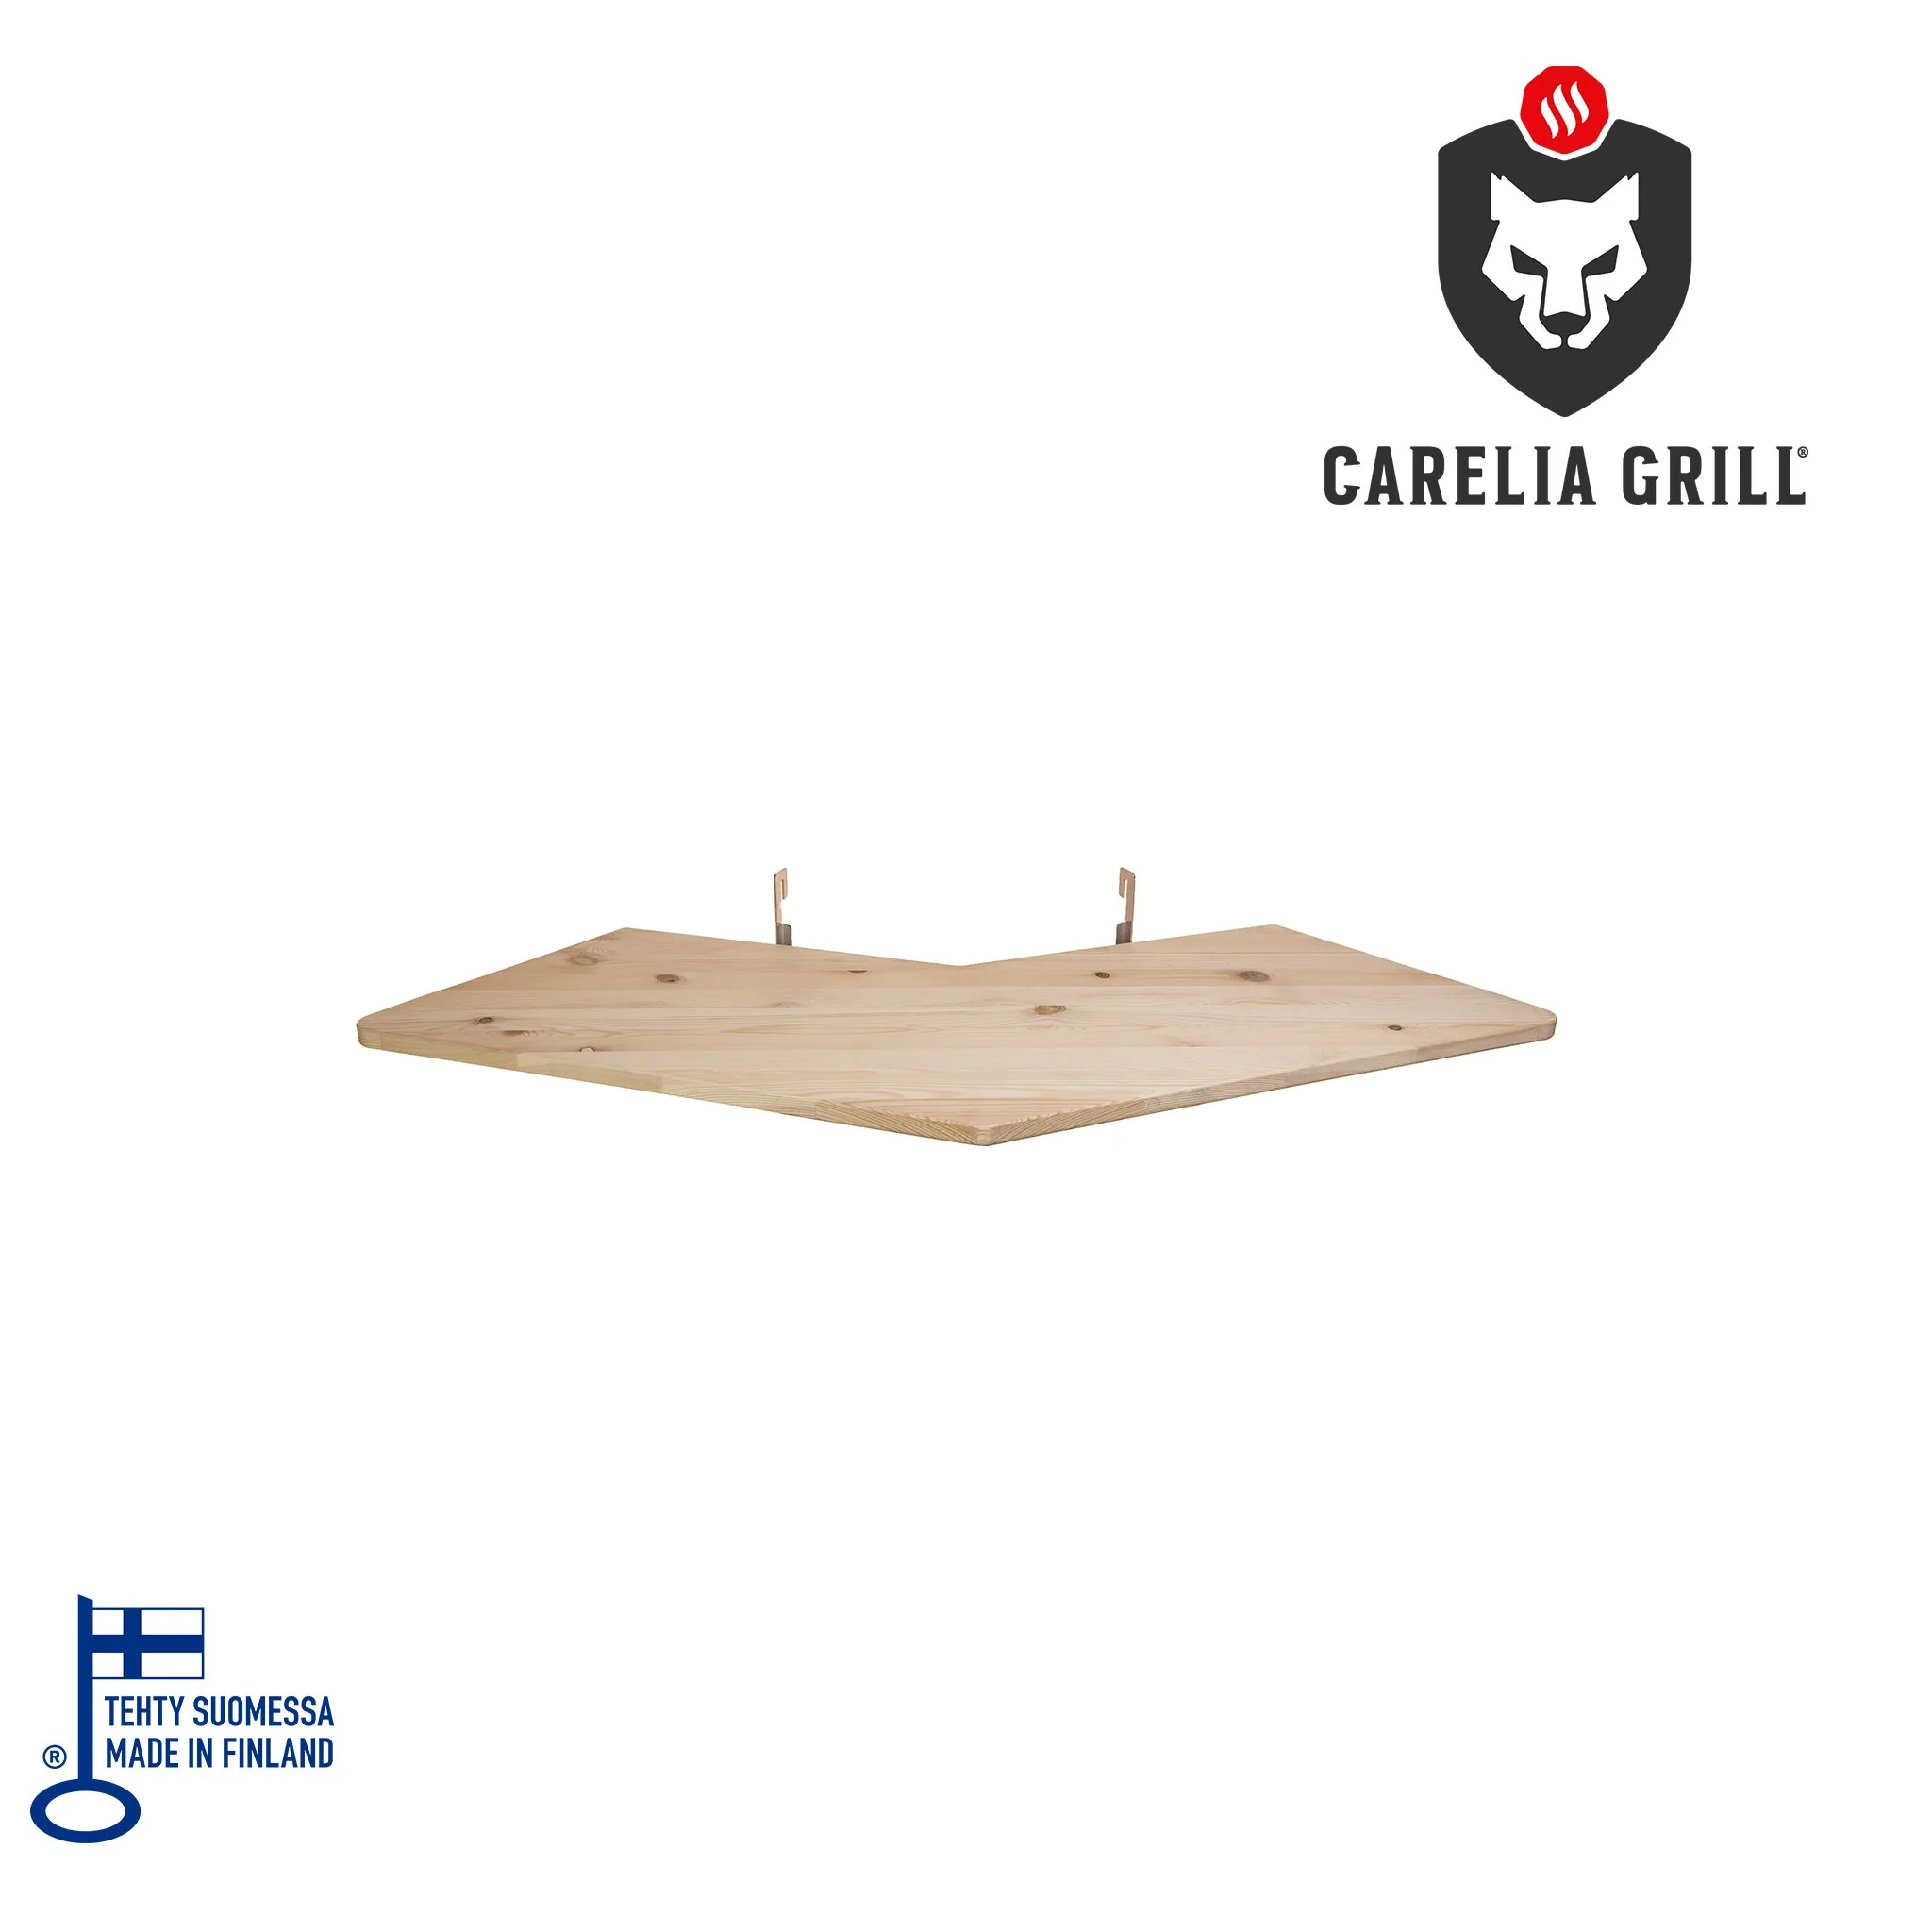 CARELIA GRILL® LARGE FLAT SKEWERS (3 pcs)
Kui kõik on käeulatuses, võite unustada lisasagimise kokkamise ajal ja keskenduda olulisele. See praktiline külglauake